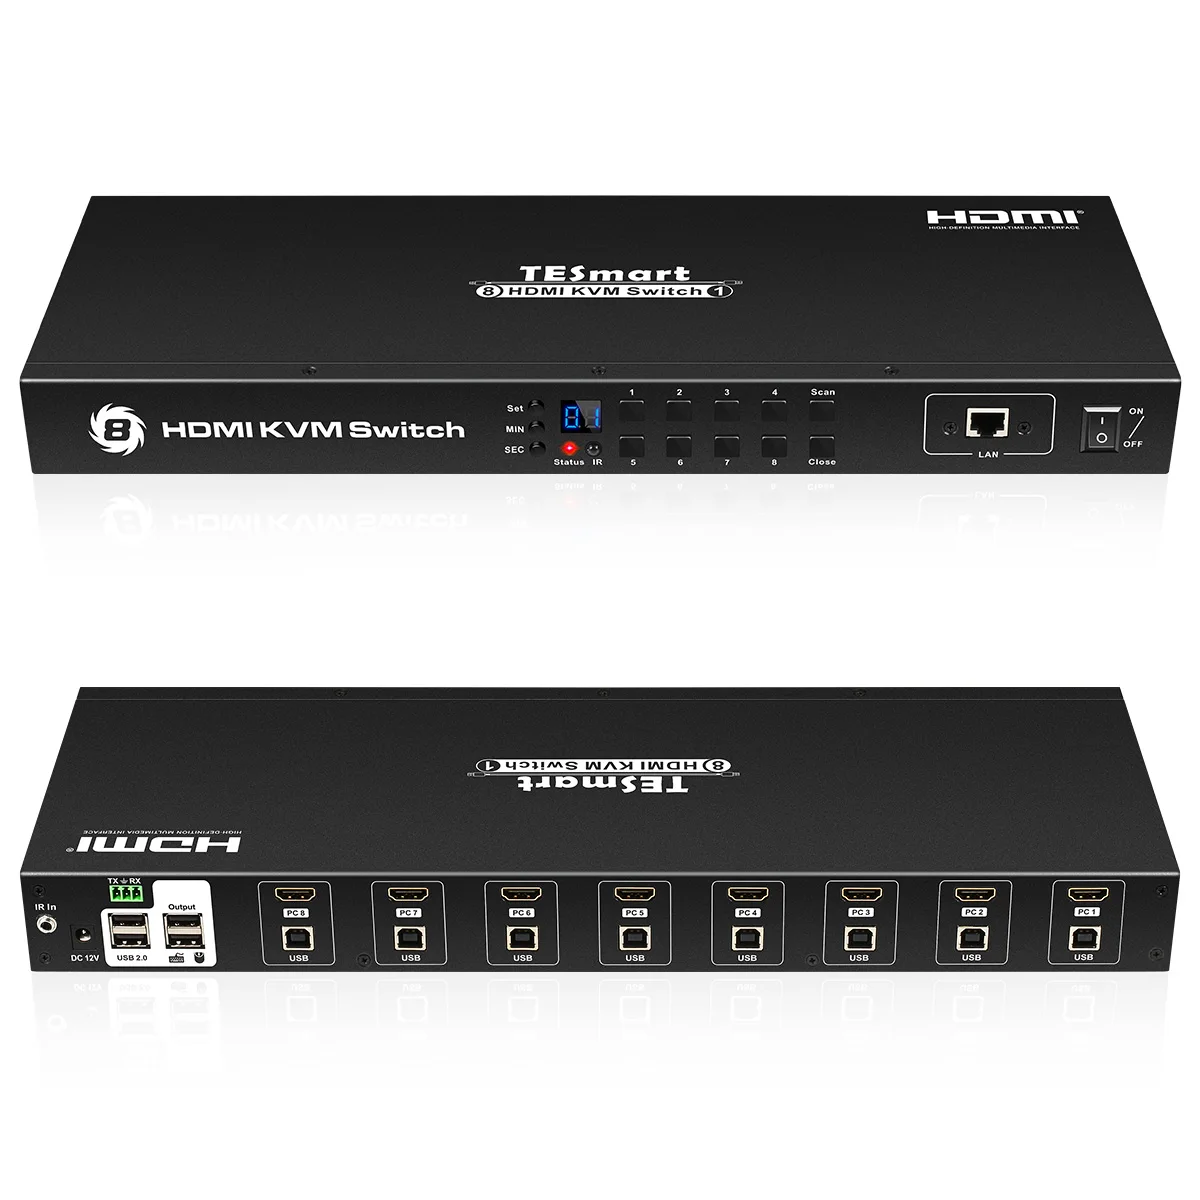 TESmart HDMI KVM переключатель 8 порты и разъёмы поддержка 3840*2160/4 к 2 шт. стойки уши Стандартный 1U управление восемь серверов w/один видео мониторы